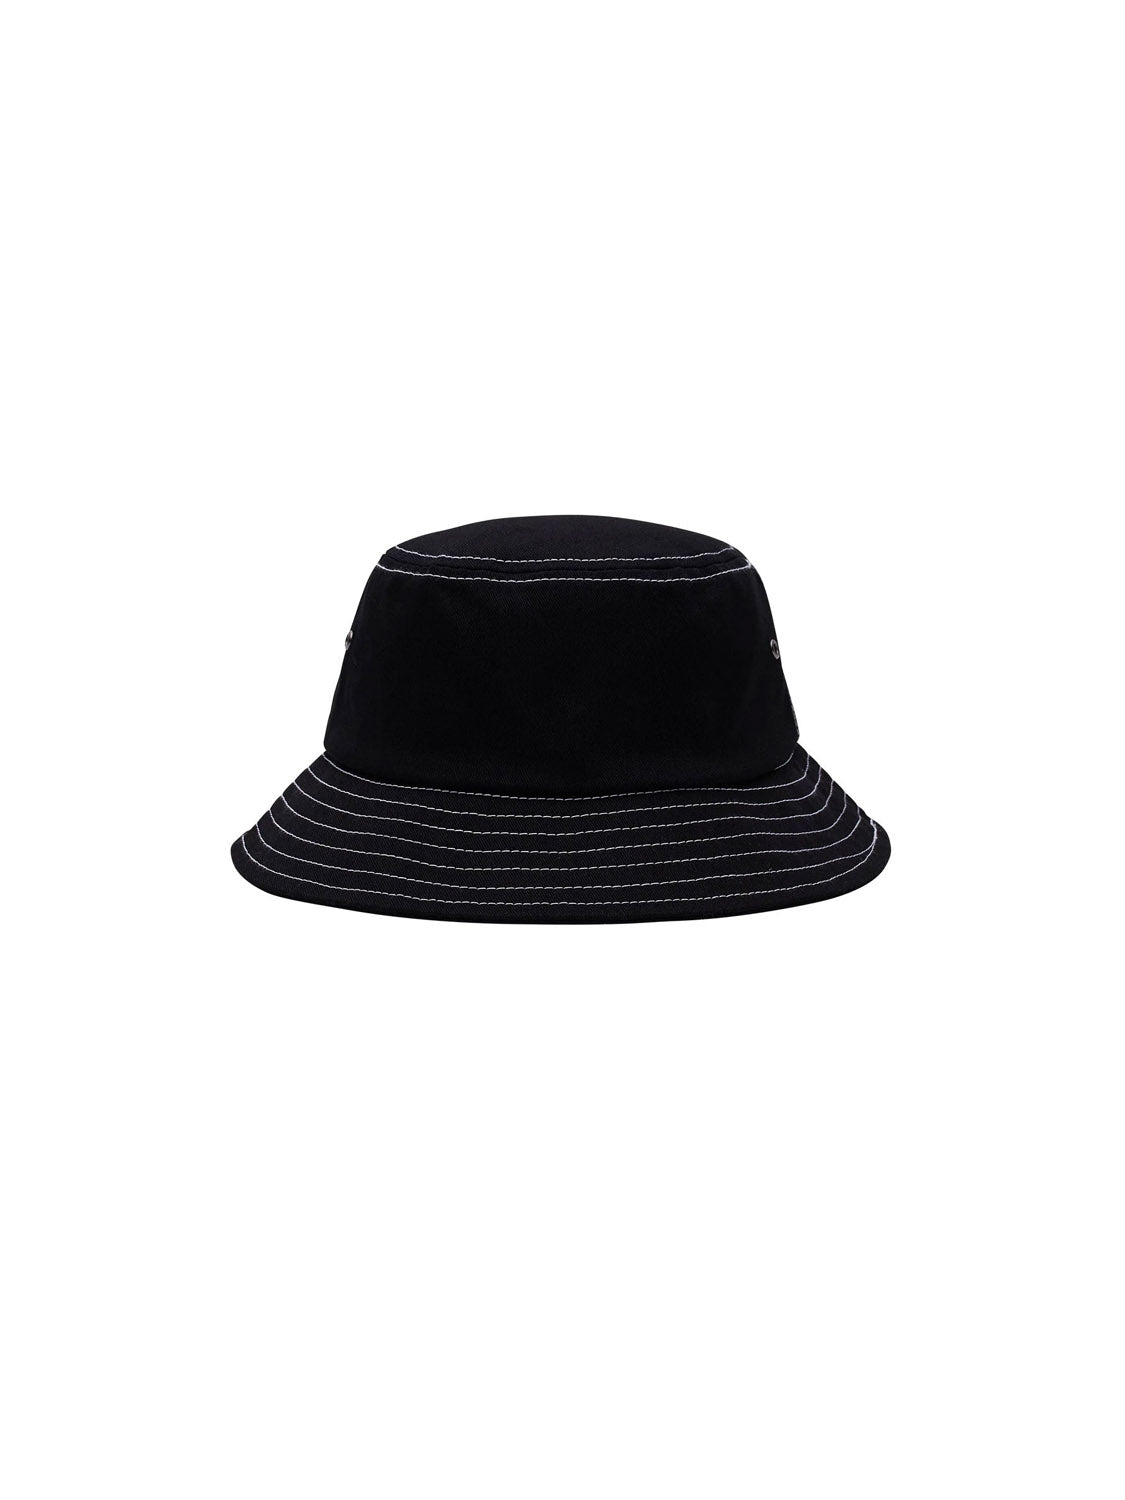 Obey Mac Bucket Hat